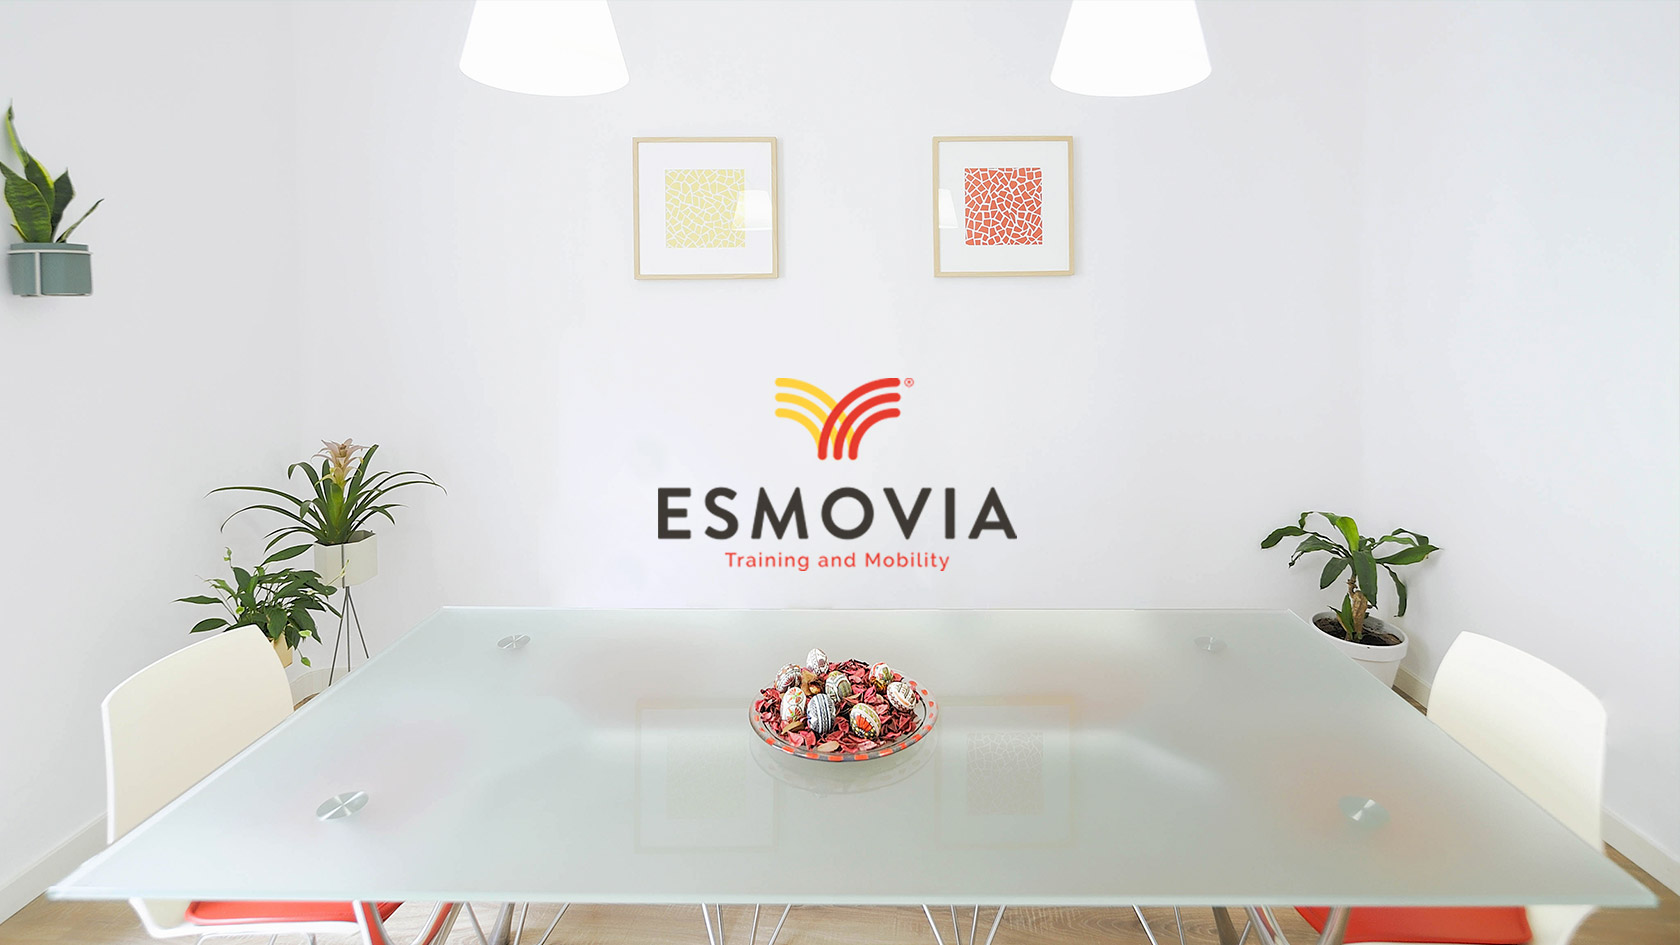 Diseño de interiores oficinas ESMOVIA - Diseño de oficinas - Diseño de espacios - Estudio de diseño gráfico Valencia Pixelarte